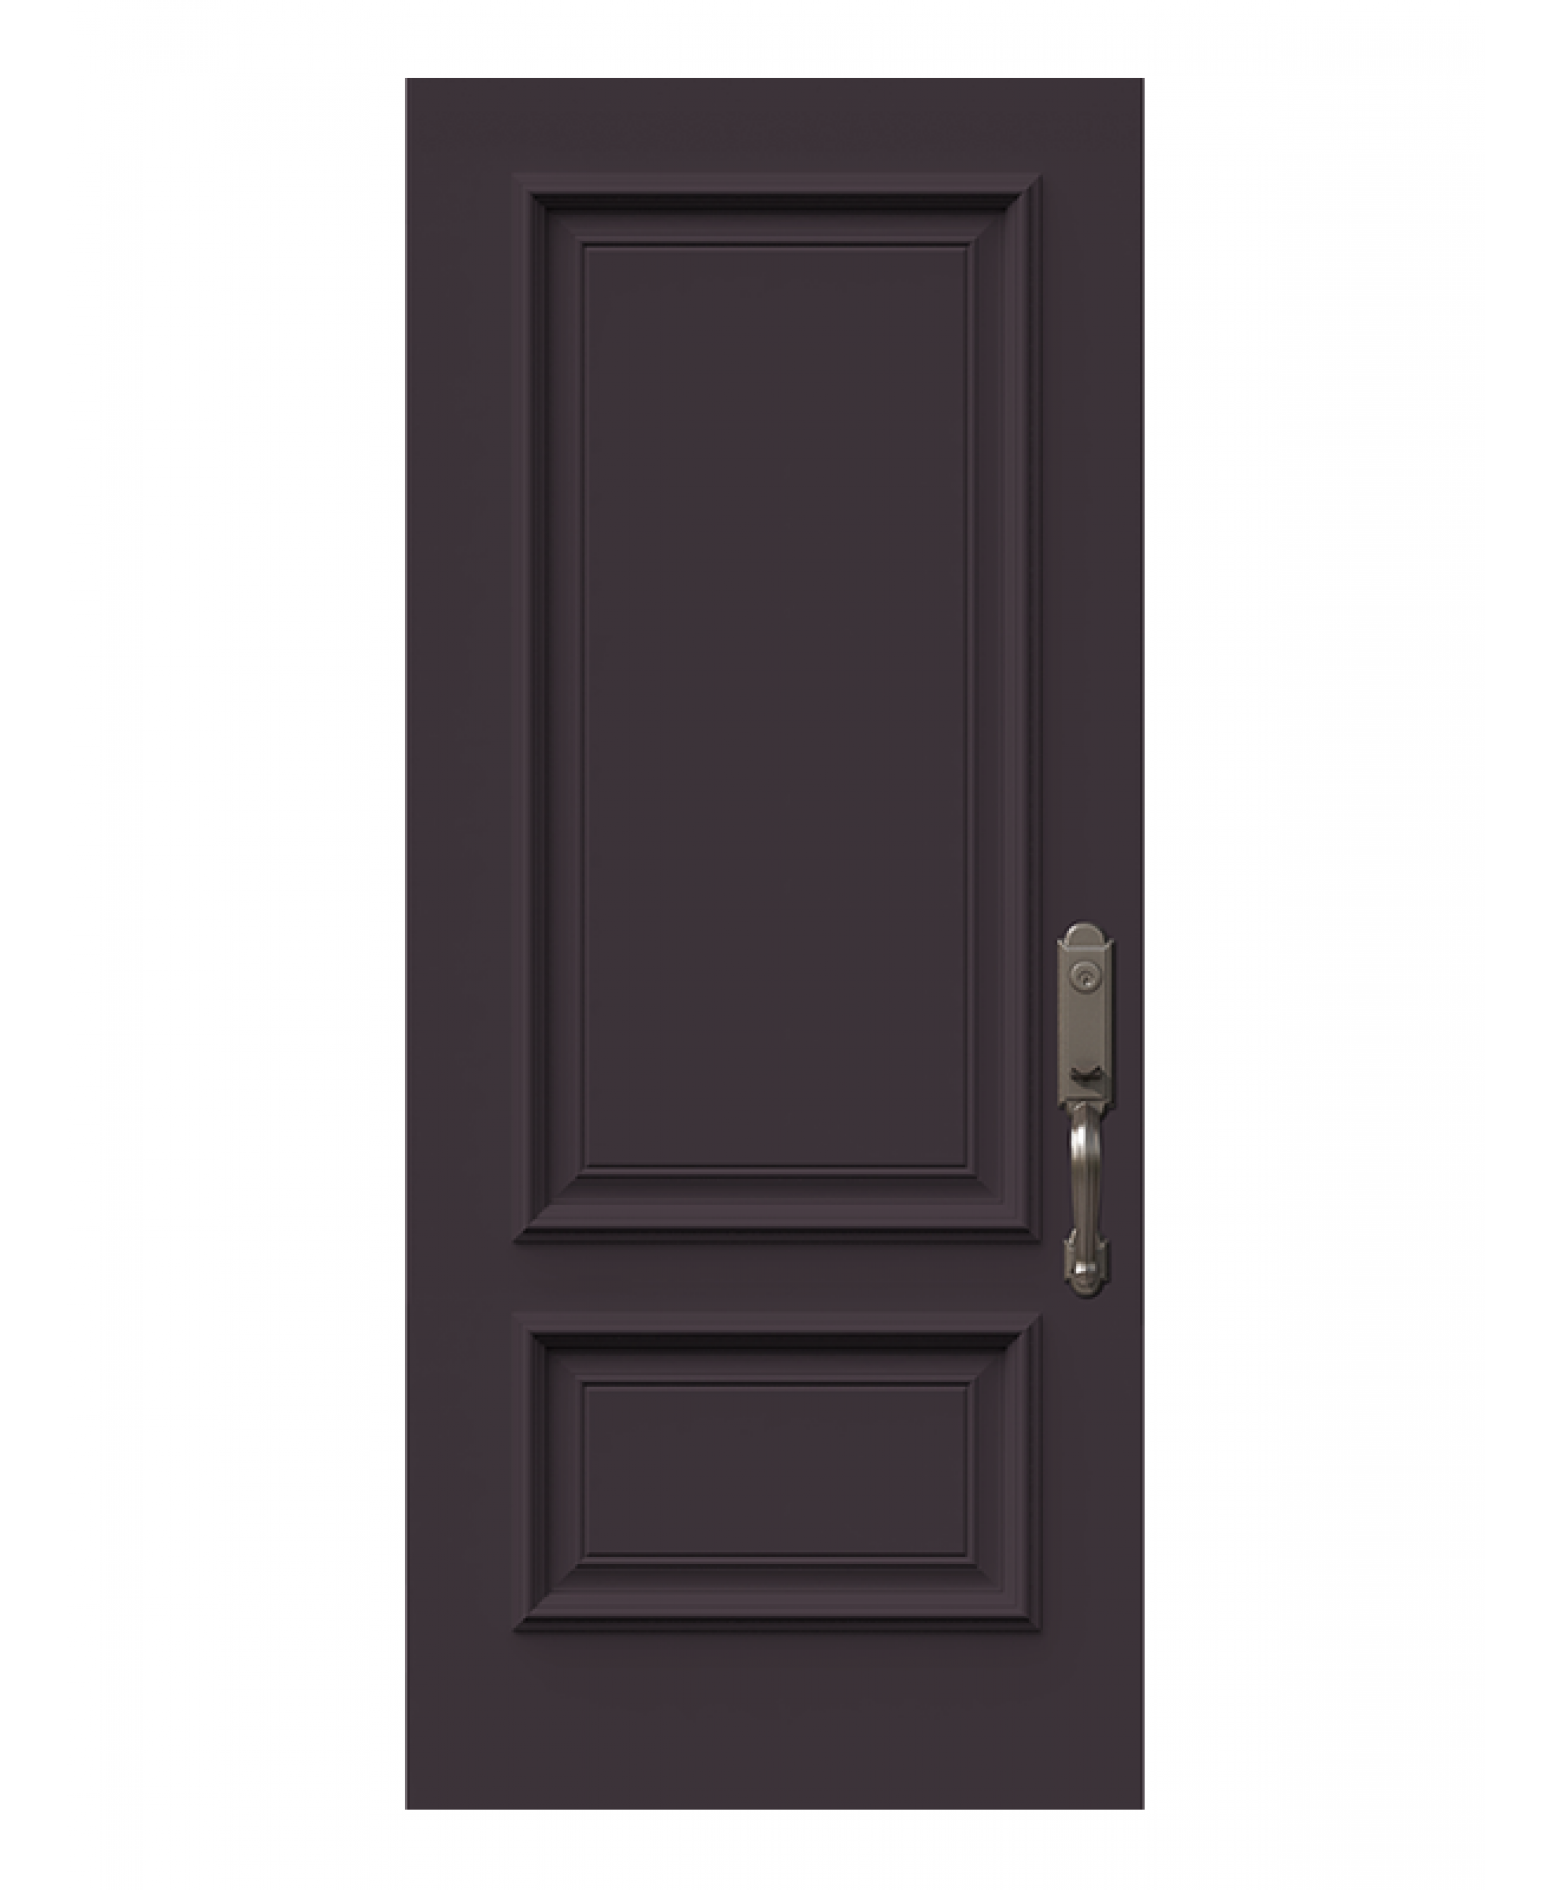 Doors for contractor - NHP